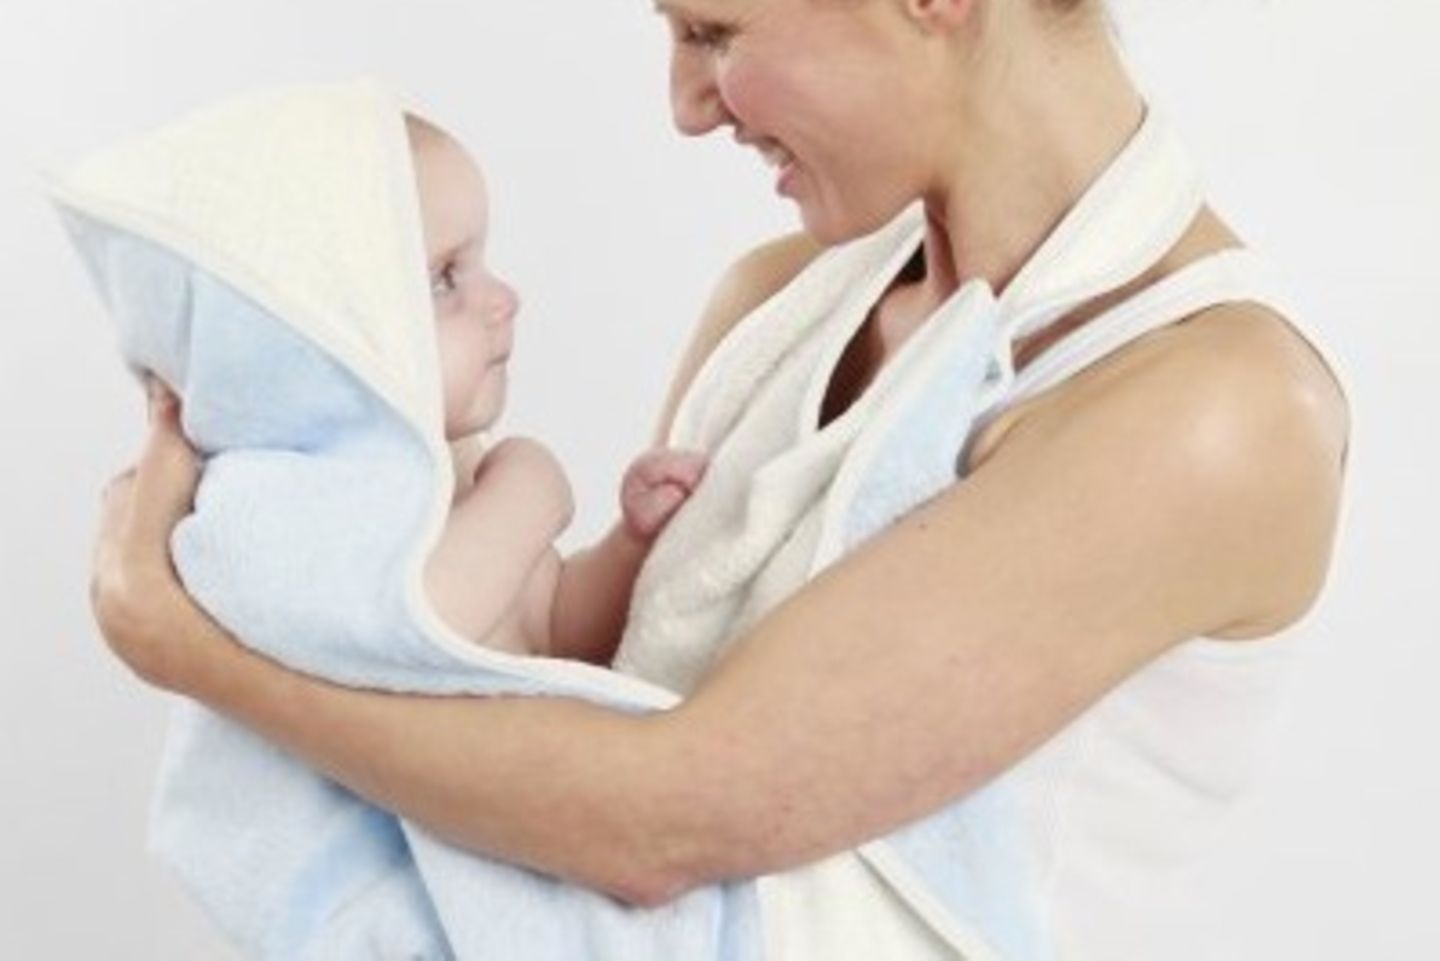 Dieses Exemplar ist besonders praktisch. Mit einer Schlaufe, die um Deinen Hals herum befestigt wird, funktioniert das Handtuch wie eine Schürze und schützt Dich vor Nässe beim Babybaden. Zum Abtrocknen das Baby einfach auf den Arm nehmen, die untere Handtuchspitze bis zum Kopf Deines Schatzes heben und einwickeln. Du bleibst trocken und Dein Baby kann sofort in ein schönes, kuscheliges Handtuch gewickelt werden. Erhältlich unter www.cuddledry.com für 29,99 £.